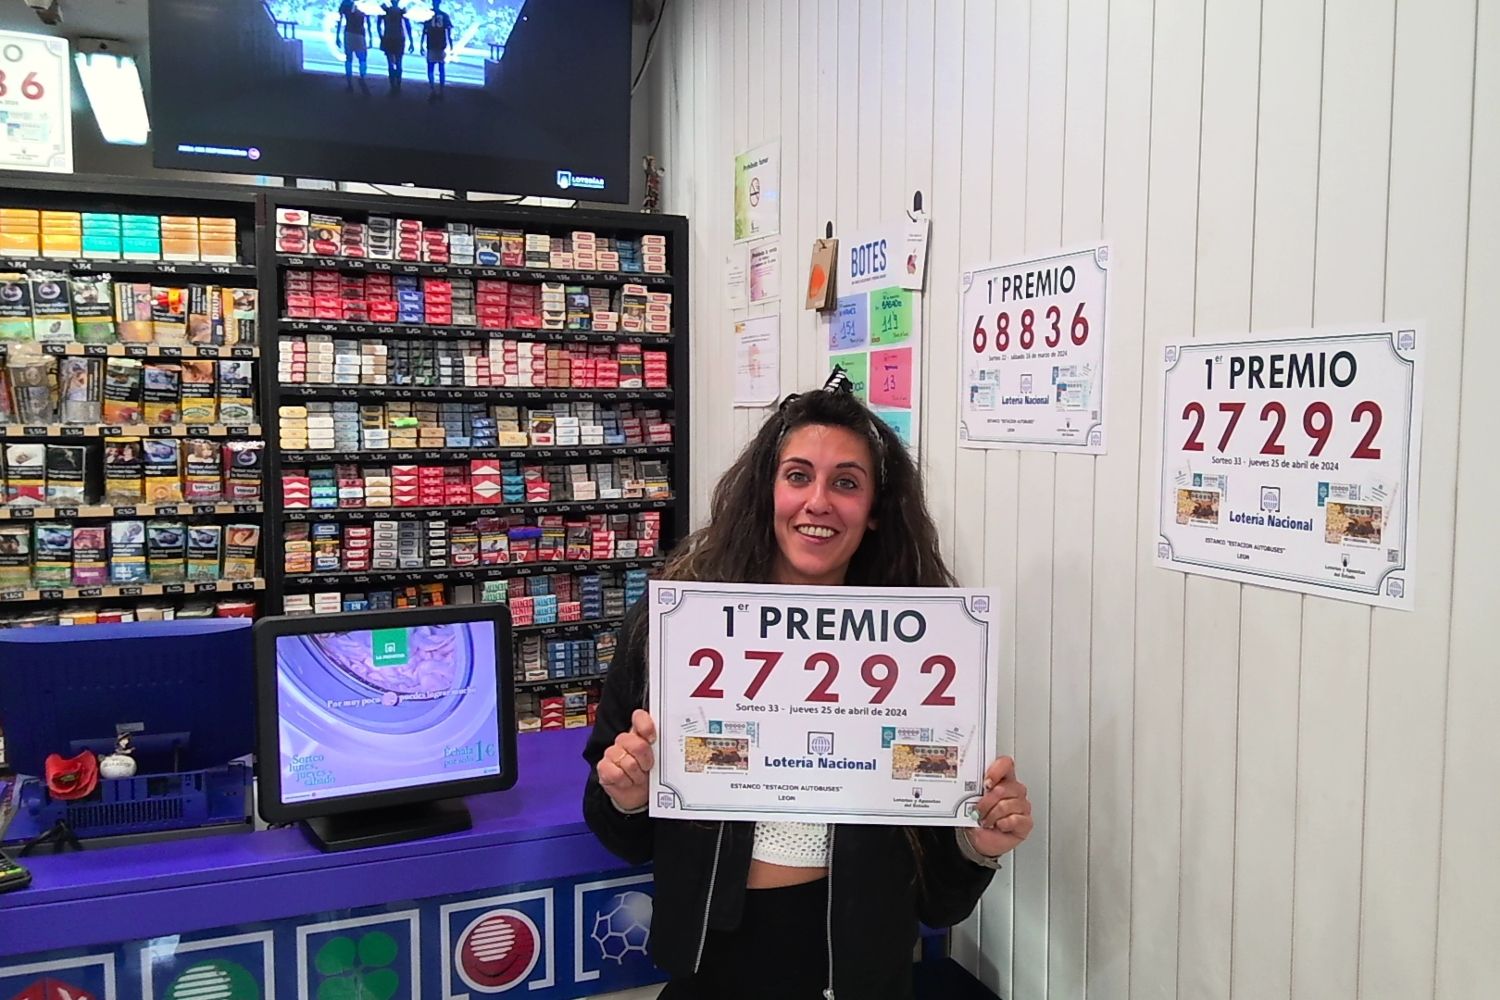 La Lotería Nacional reparte un primer premio en el “Estanco Estación Autobuses” situado en la avenida del Ingeniero Sáenz de Miera